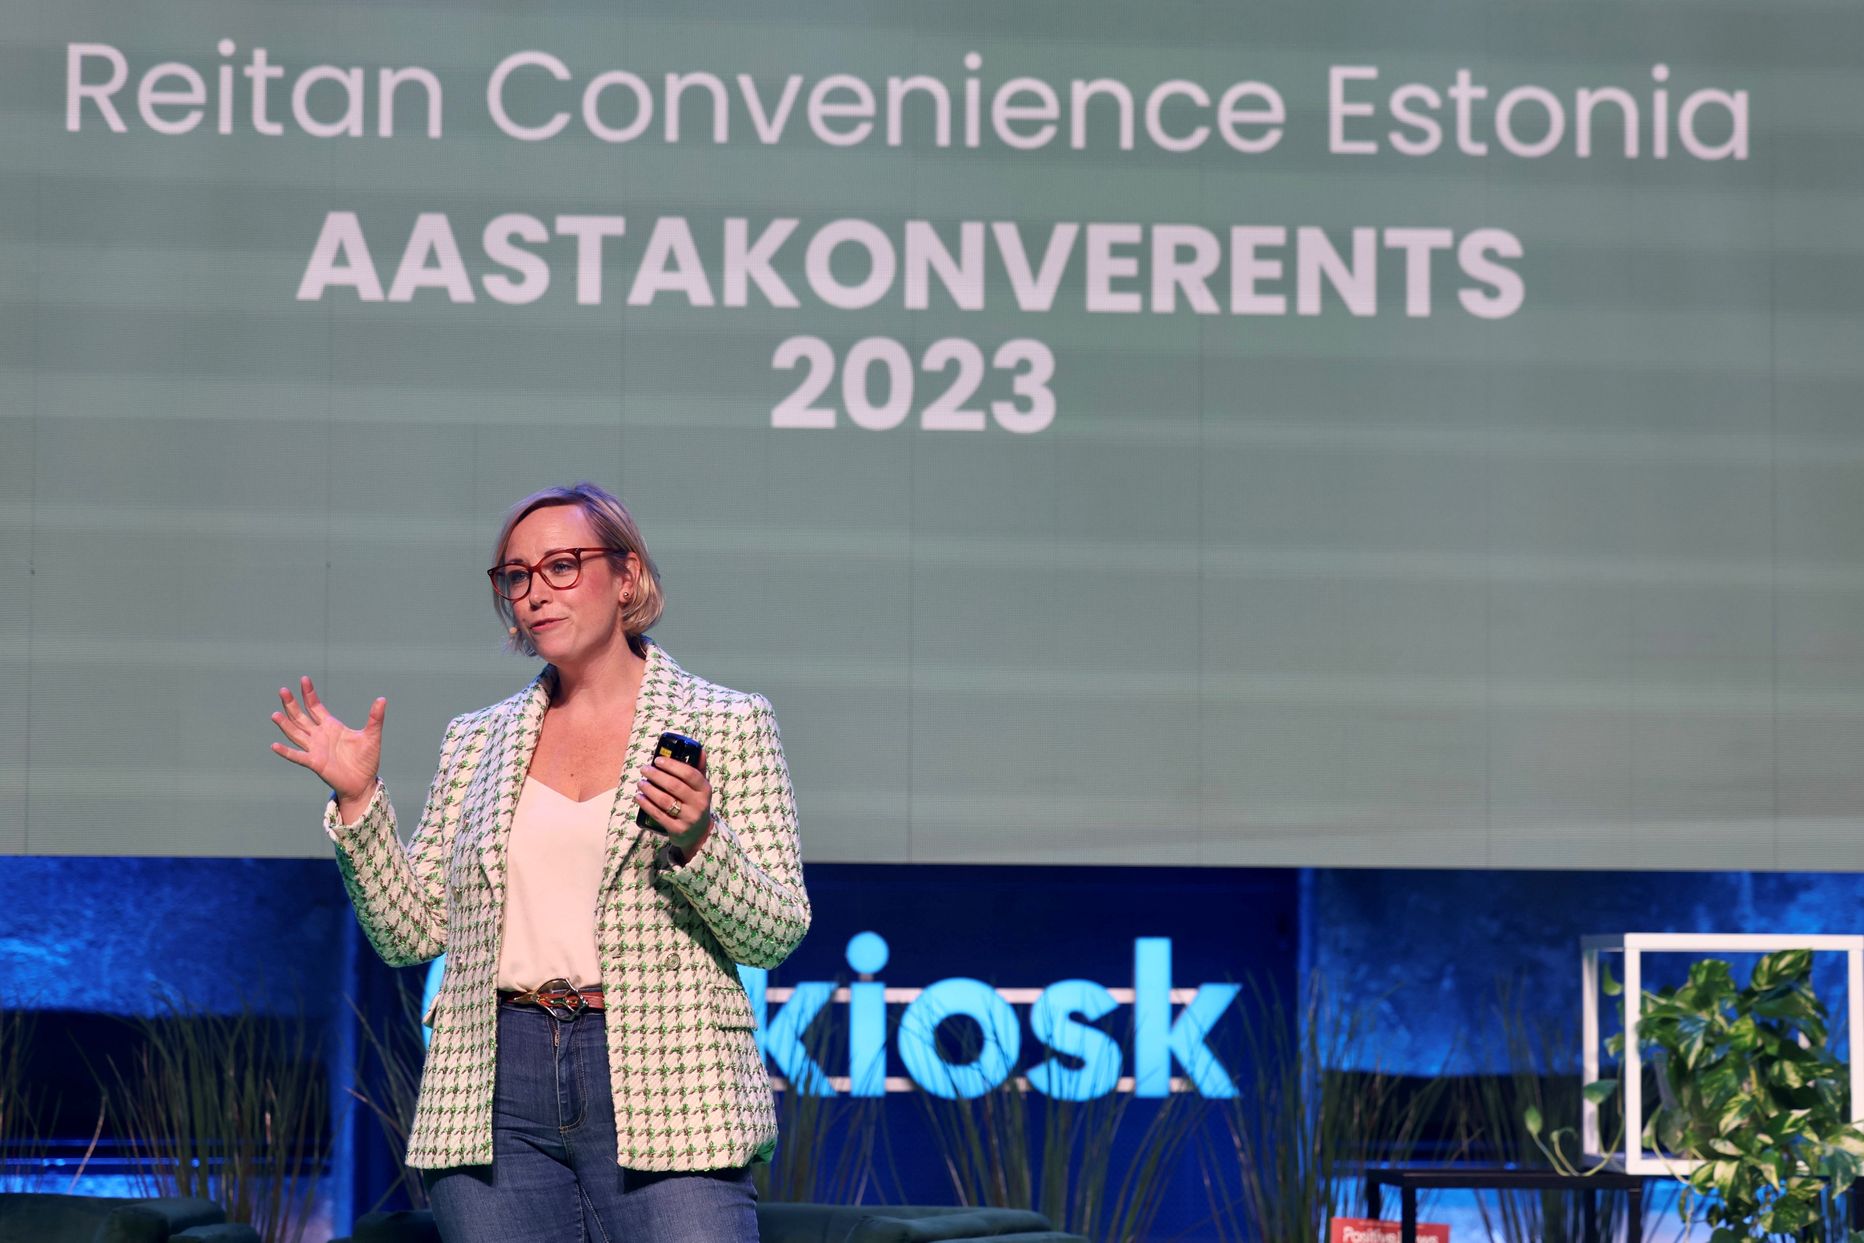 Elin Enfors-Kautsky esines märtsi alguses Reitan Convenince Estonia aastakonverentsil.